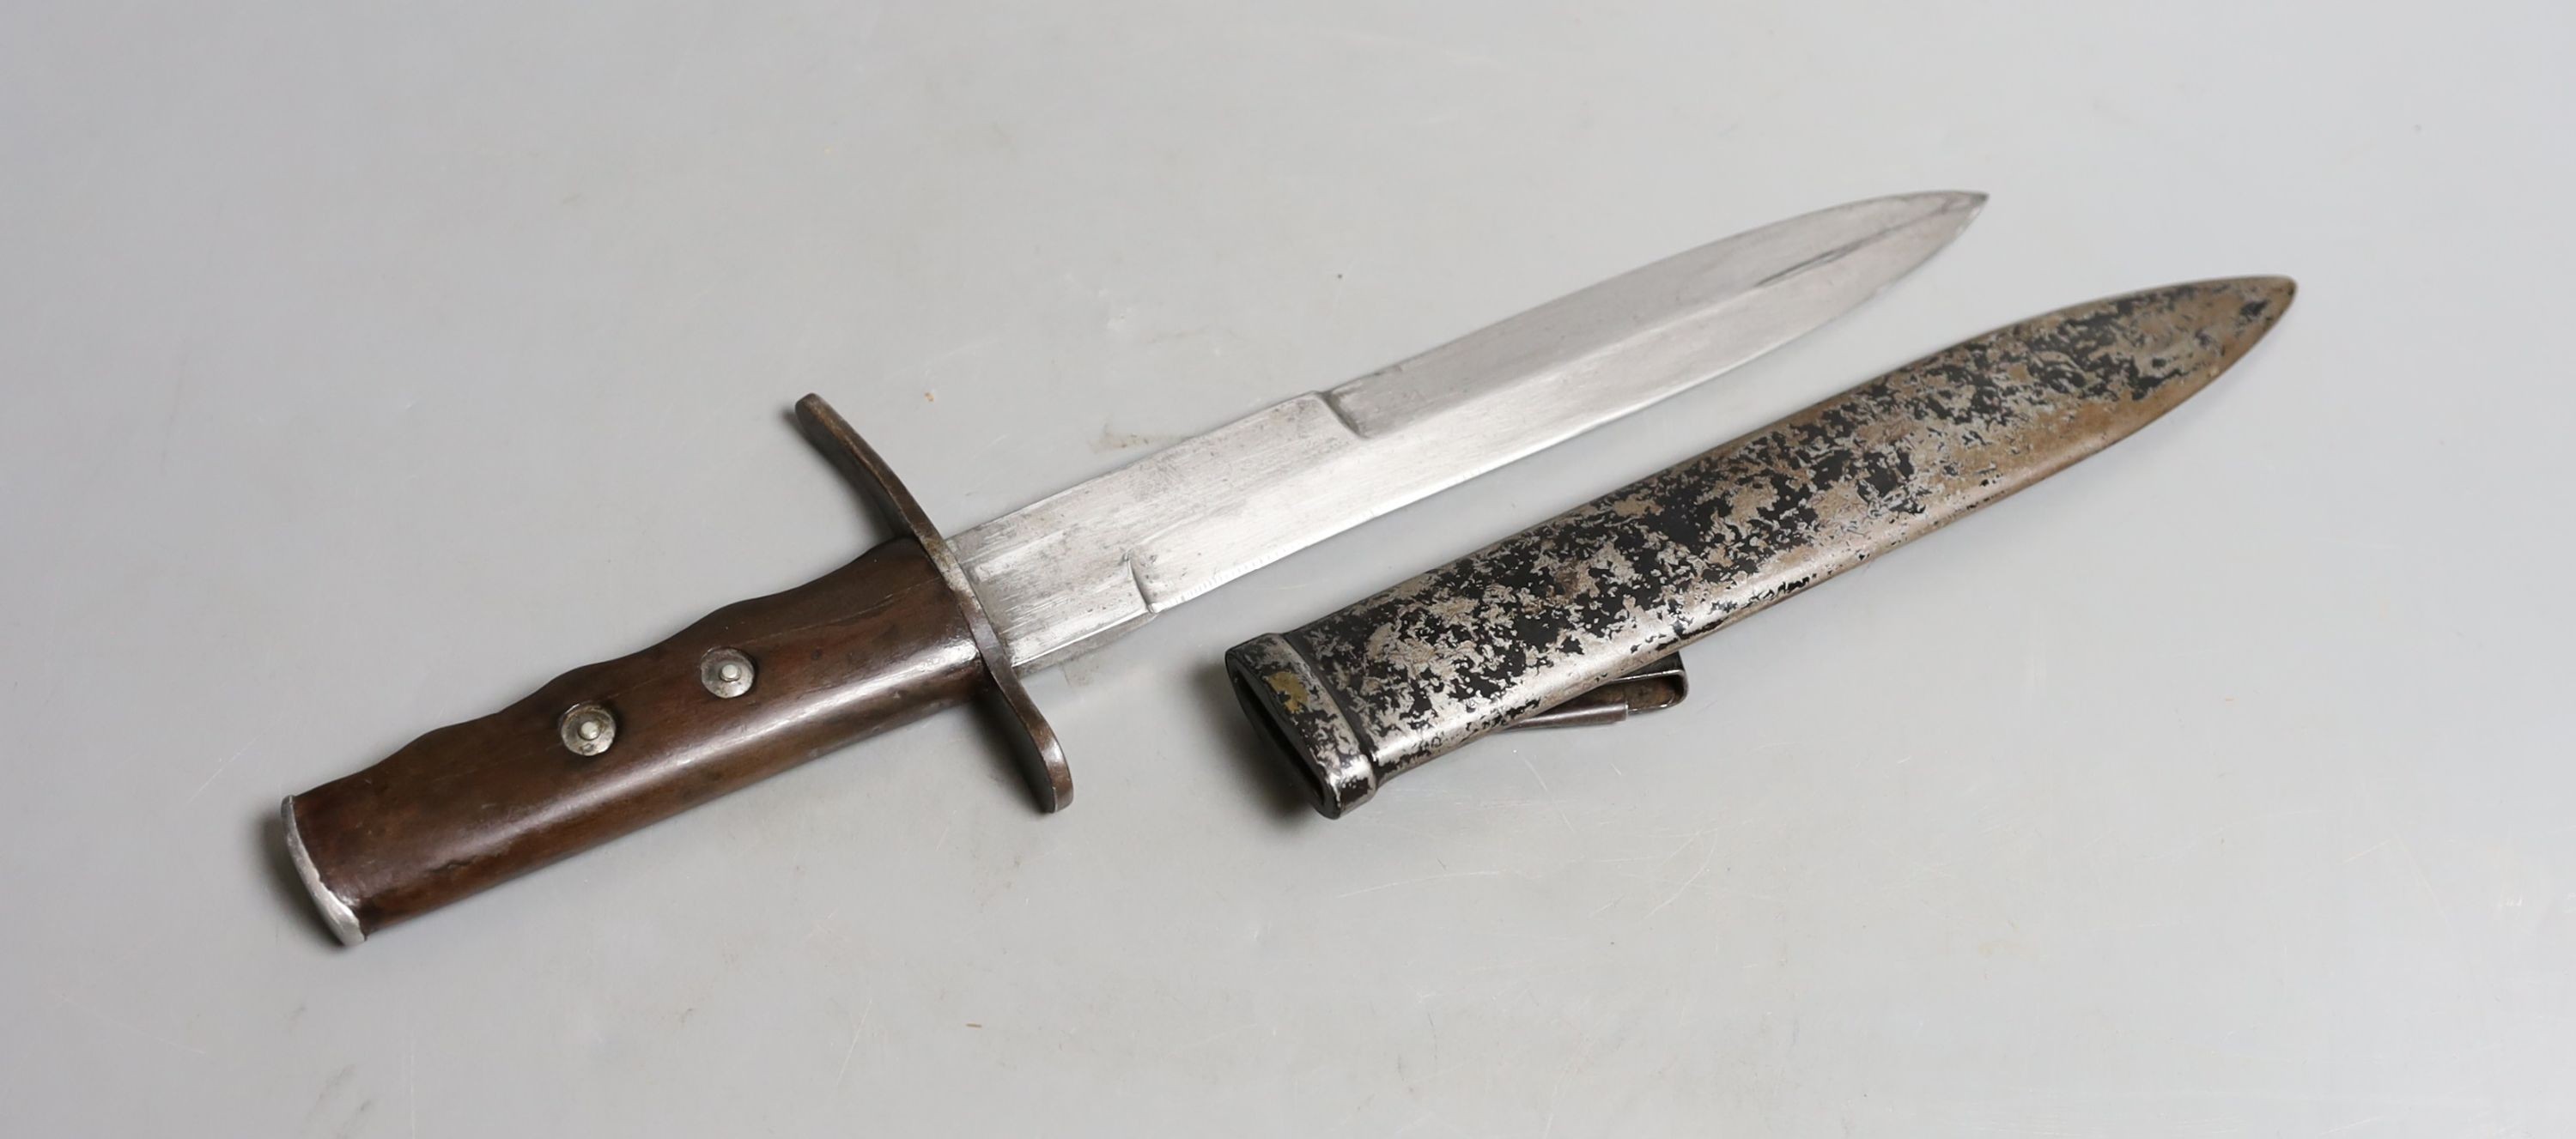 An original WWII German Army Officer's dagger, 33 cms long.